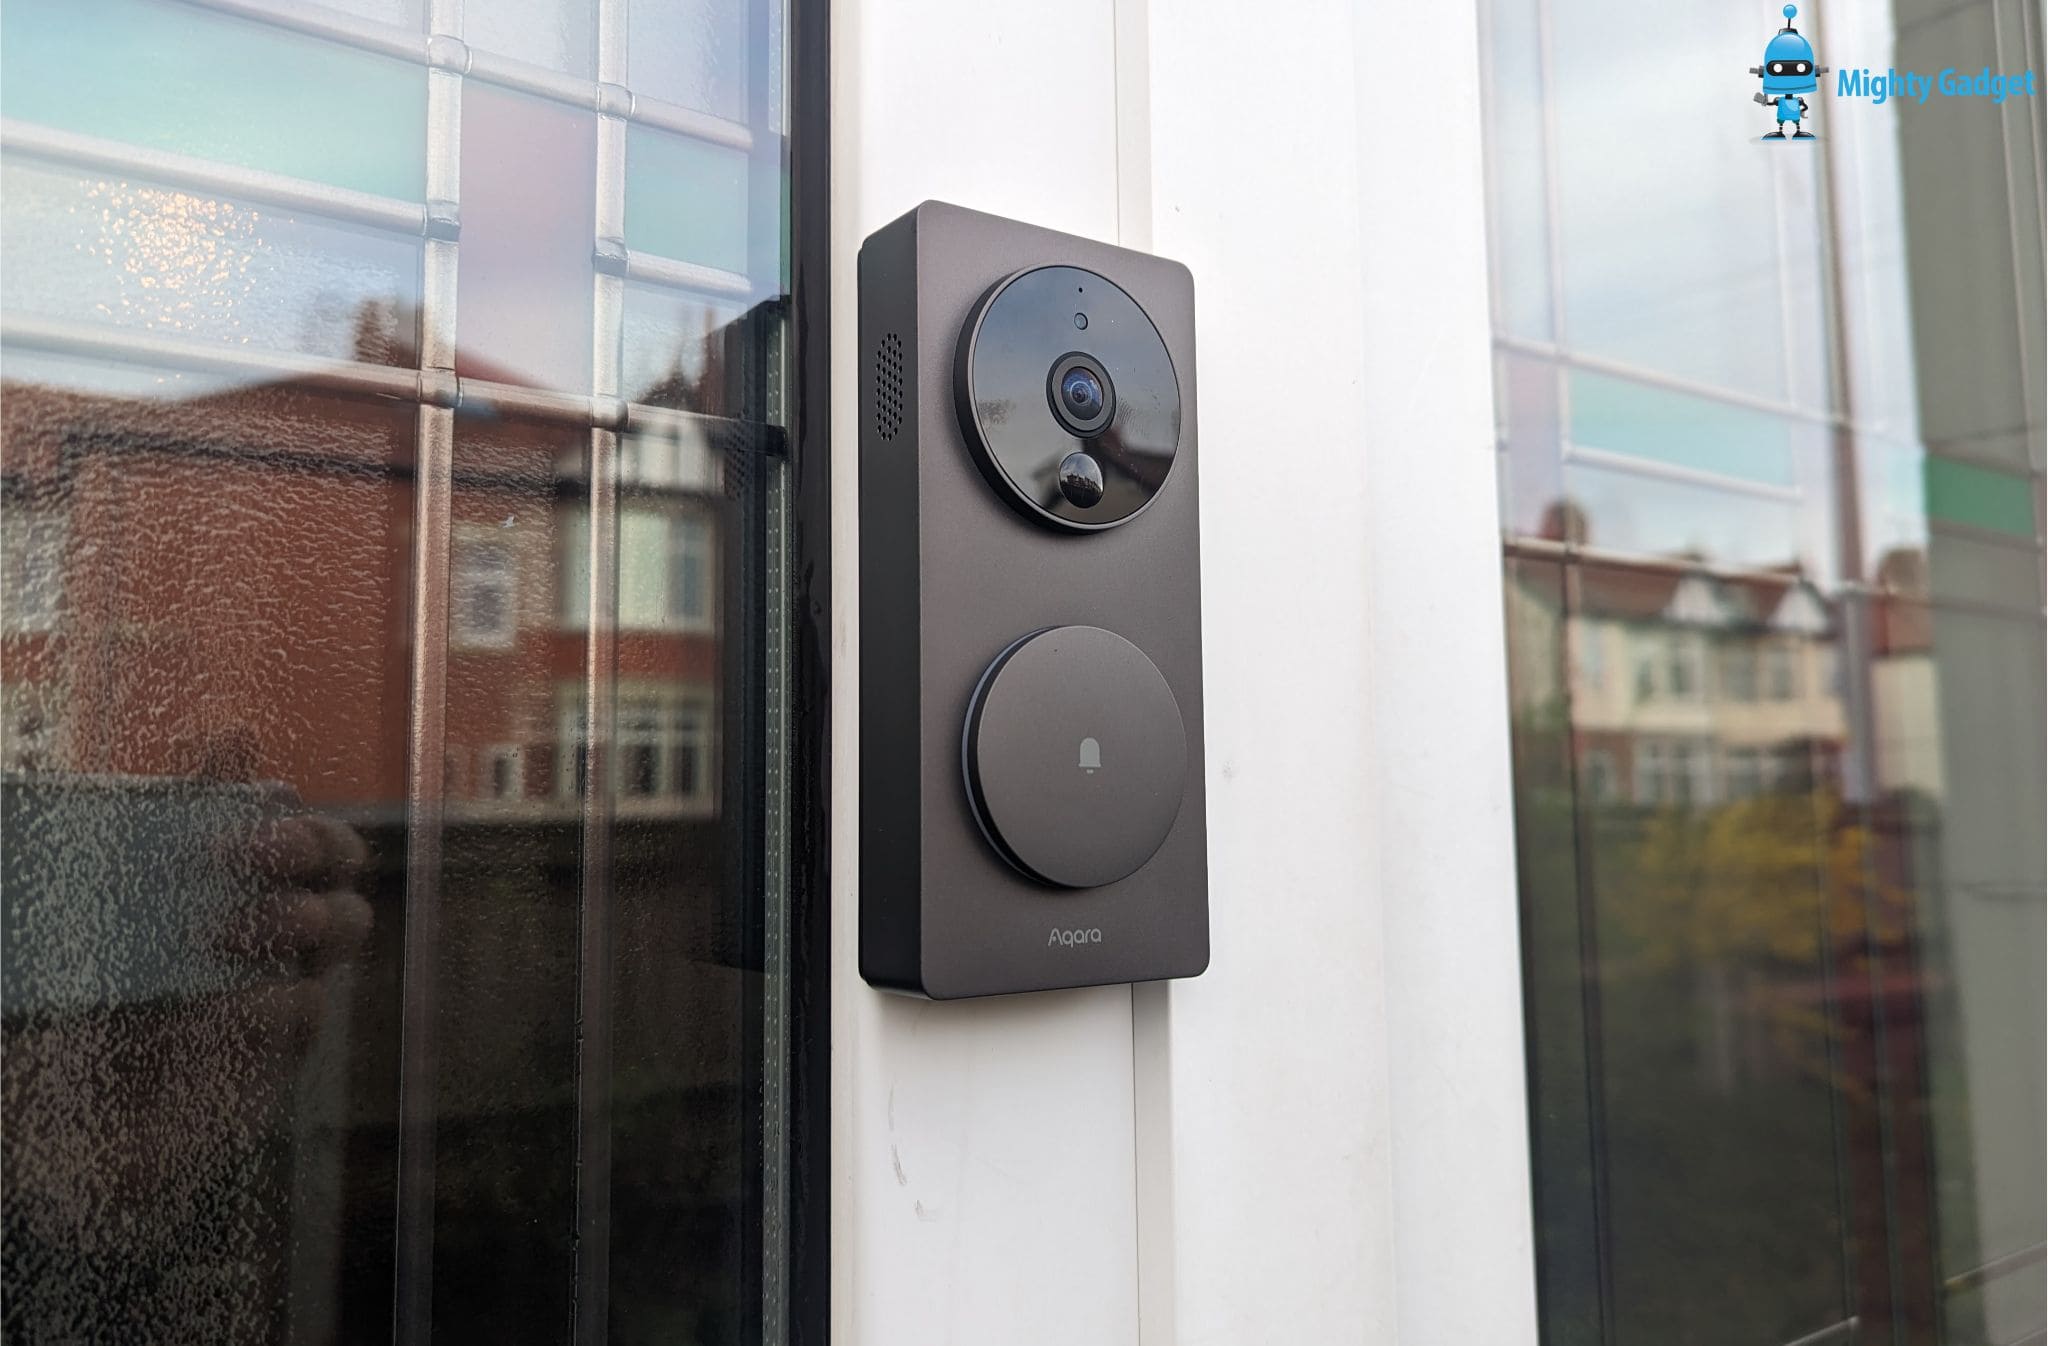 Aqara Smart Video Doorbell G4 Mighty Gadget Review